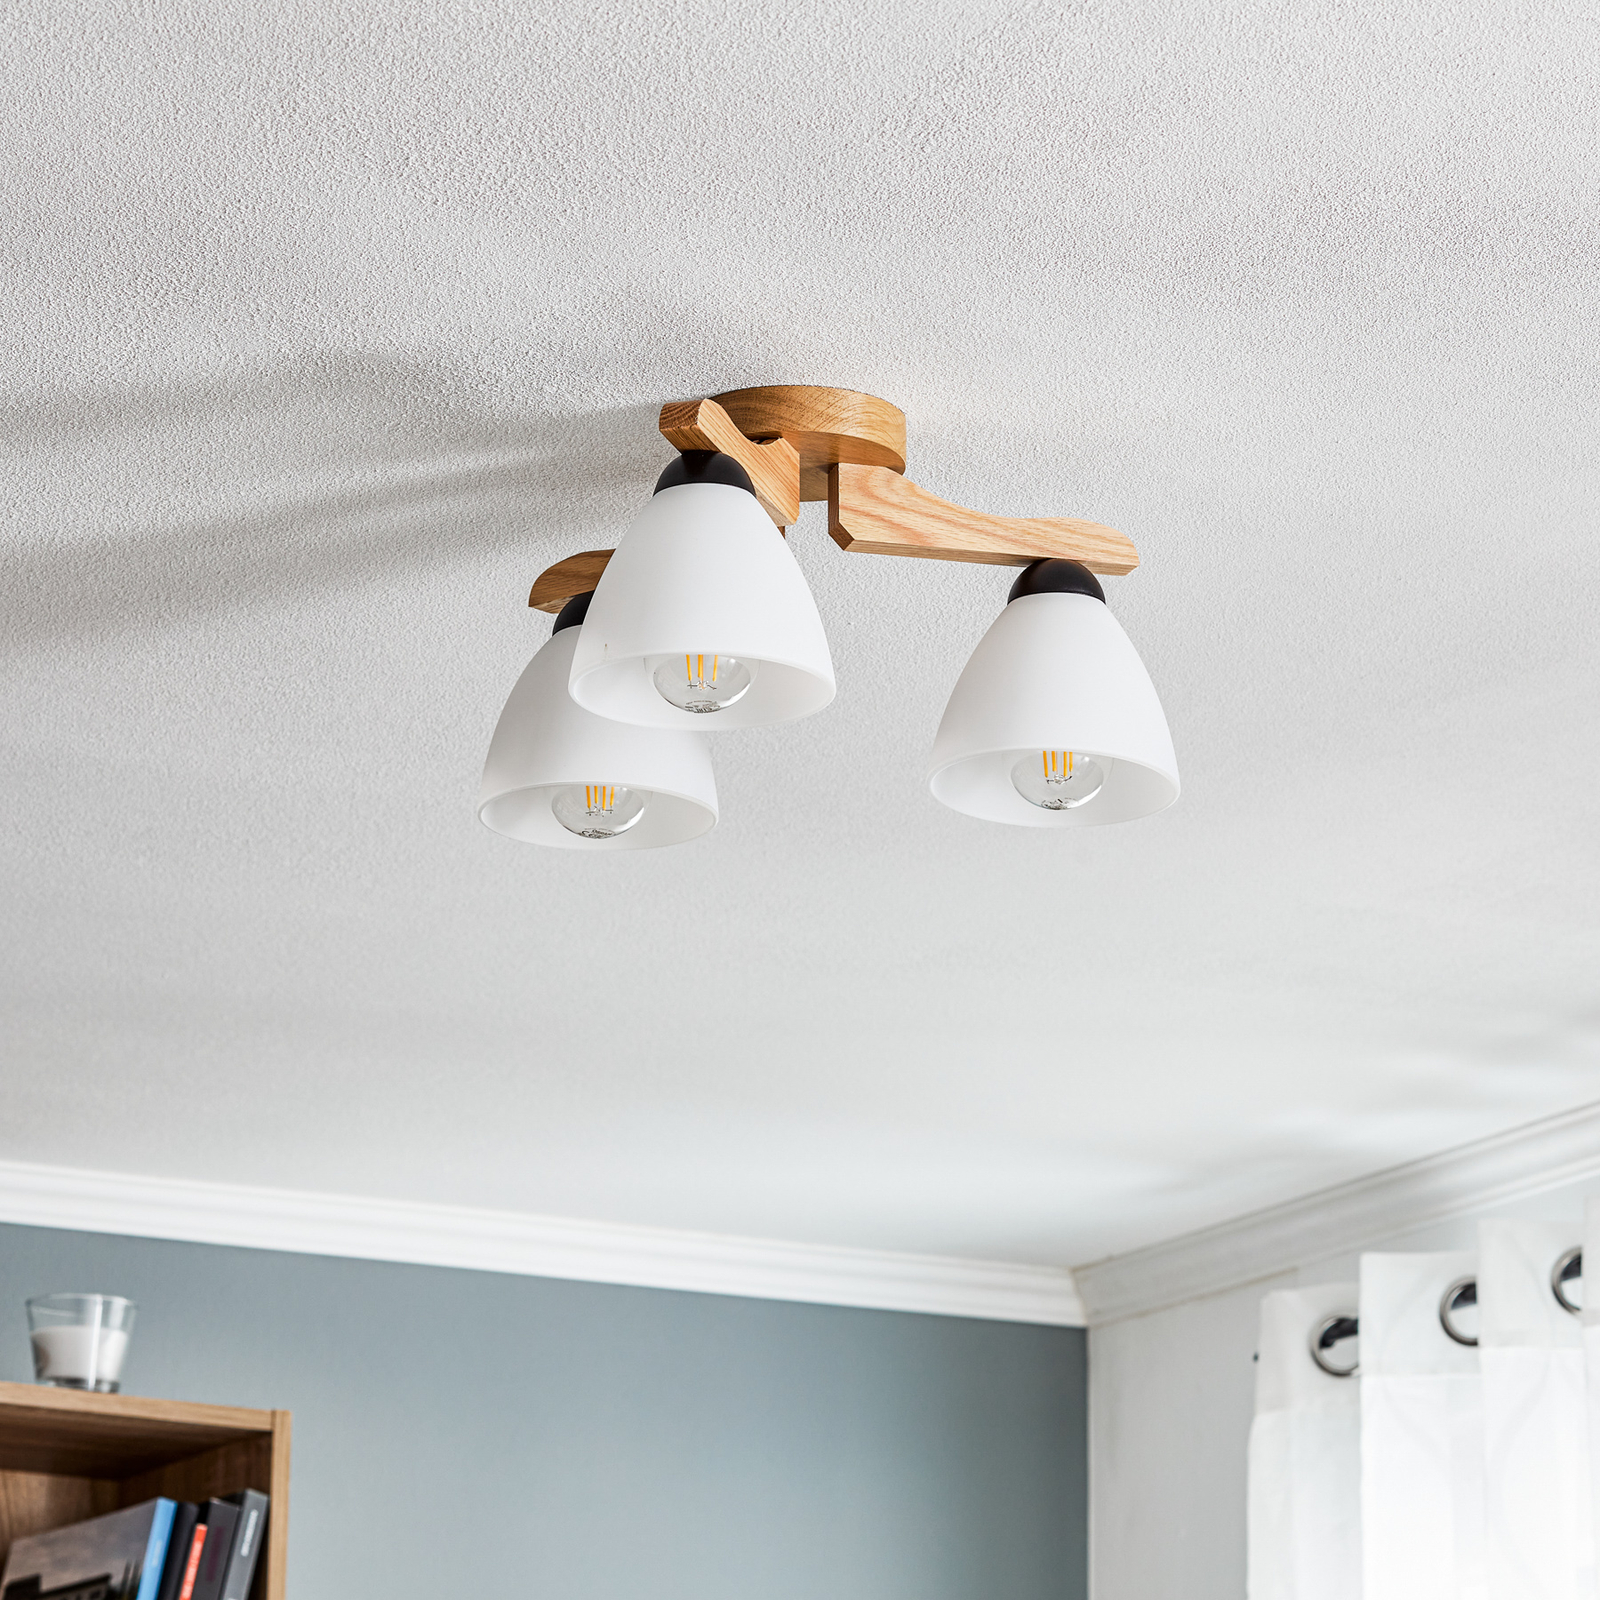 Haro ceiling light, oak/white three-bulb